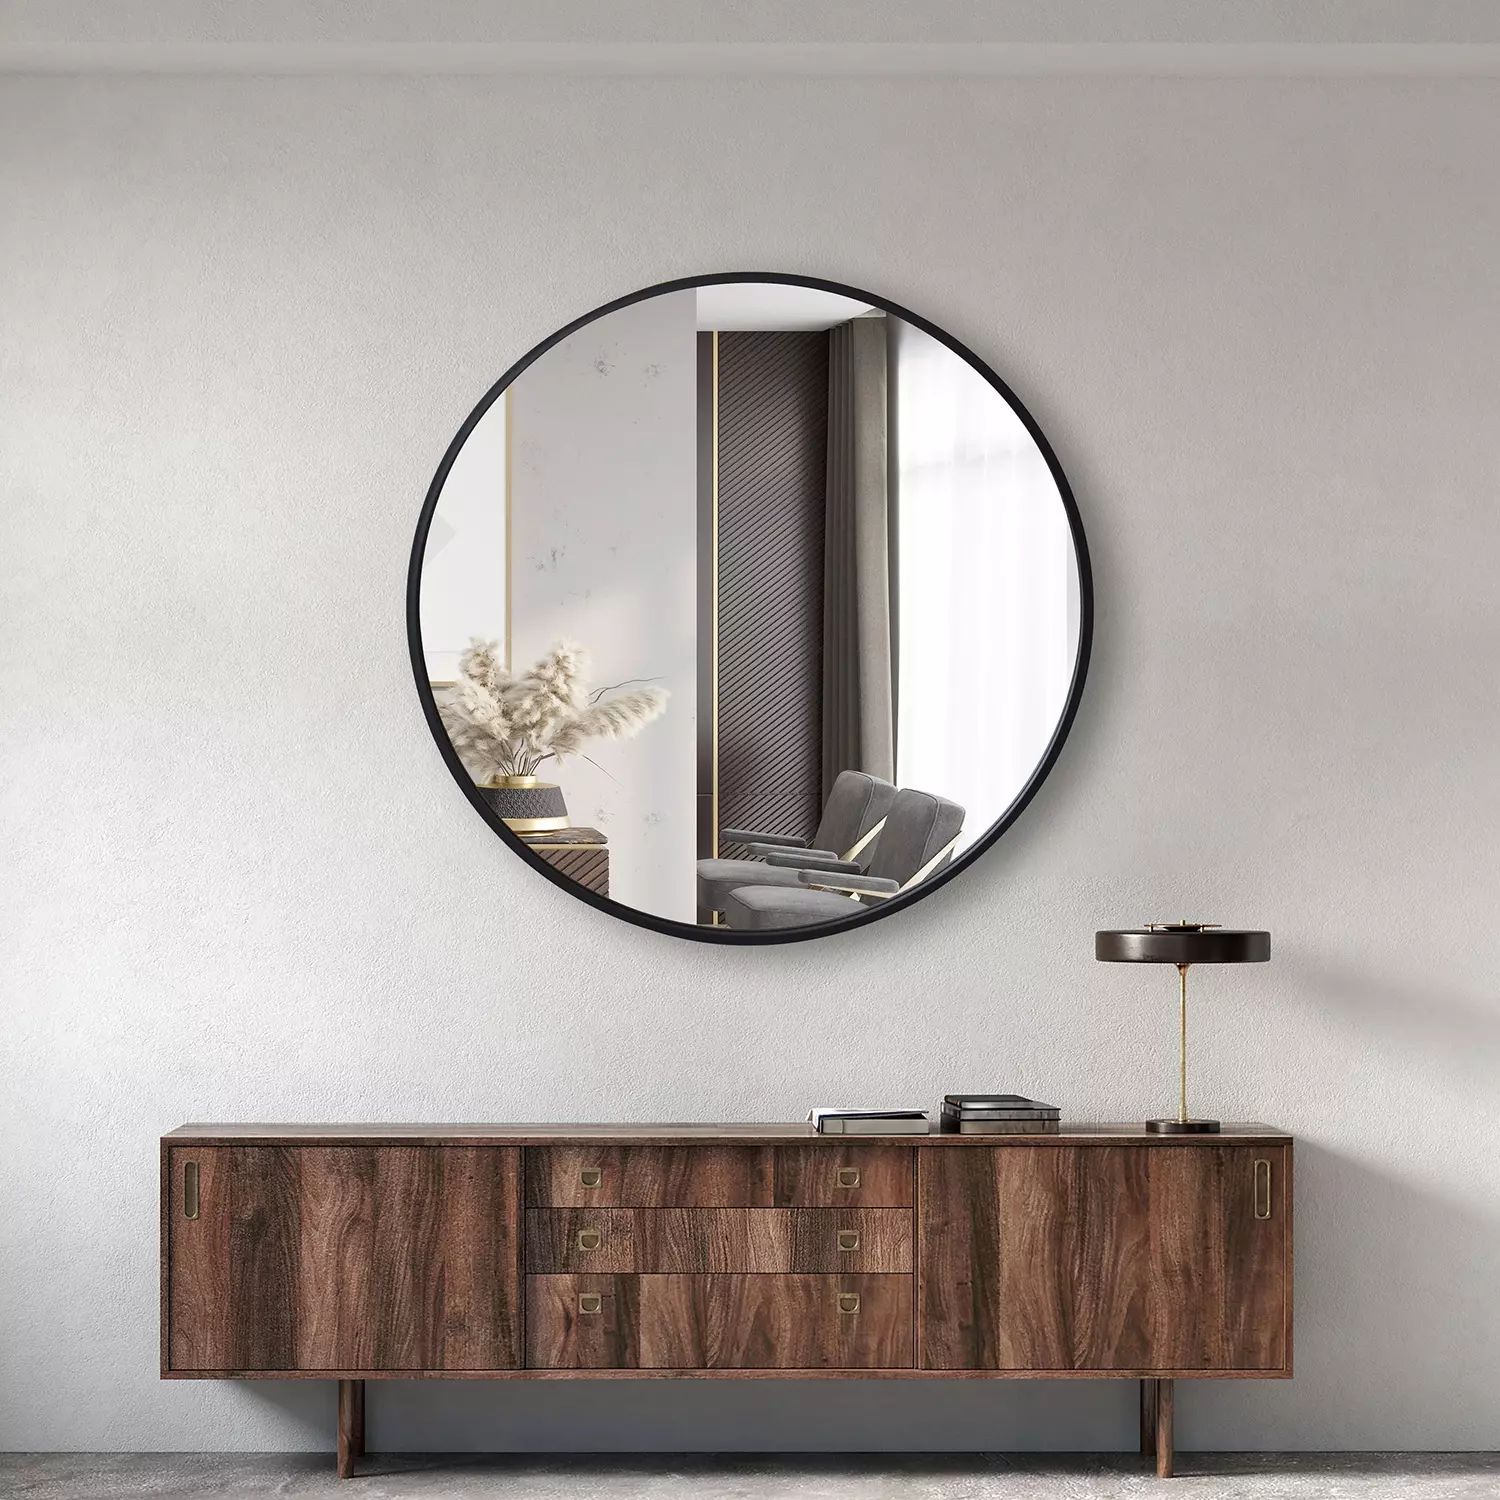 Jill Zarin 36" Elegant Round Metal Wall Mirror, Assorted Colors | Sam's Club